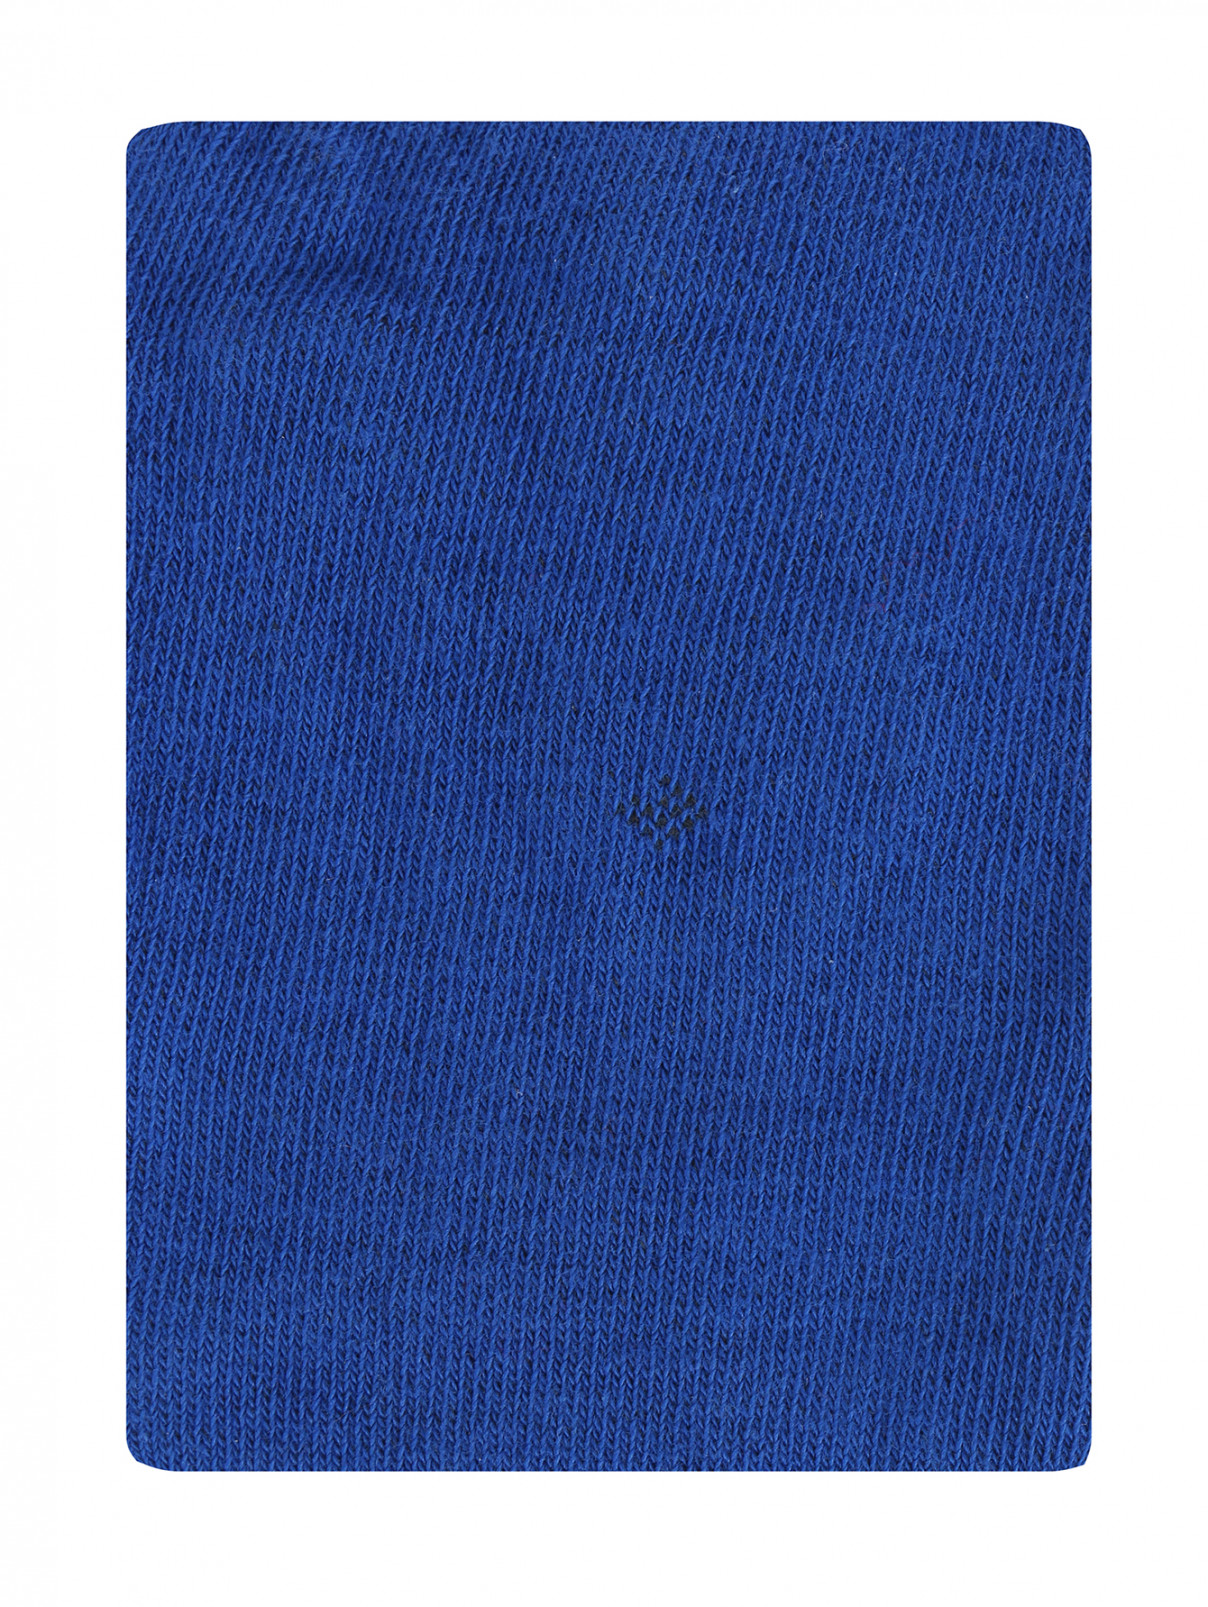 Колготки из смешанного хлопка  с контрастными пятками MiMiSol  –  Общий вид  – Цвет:  Синий